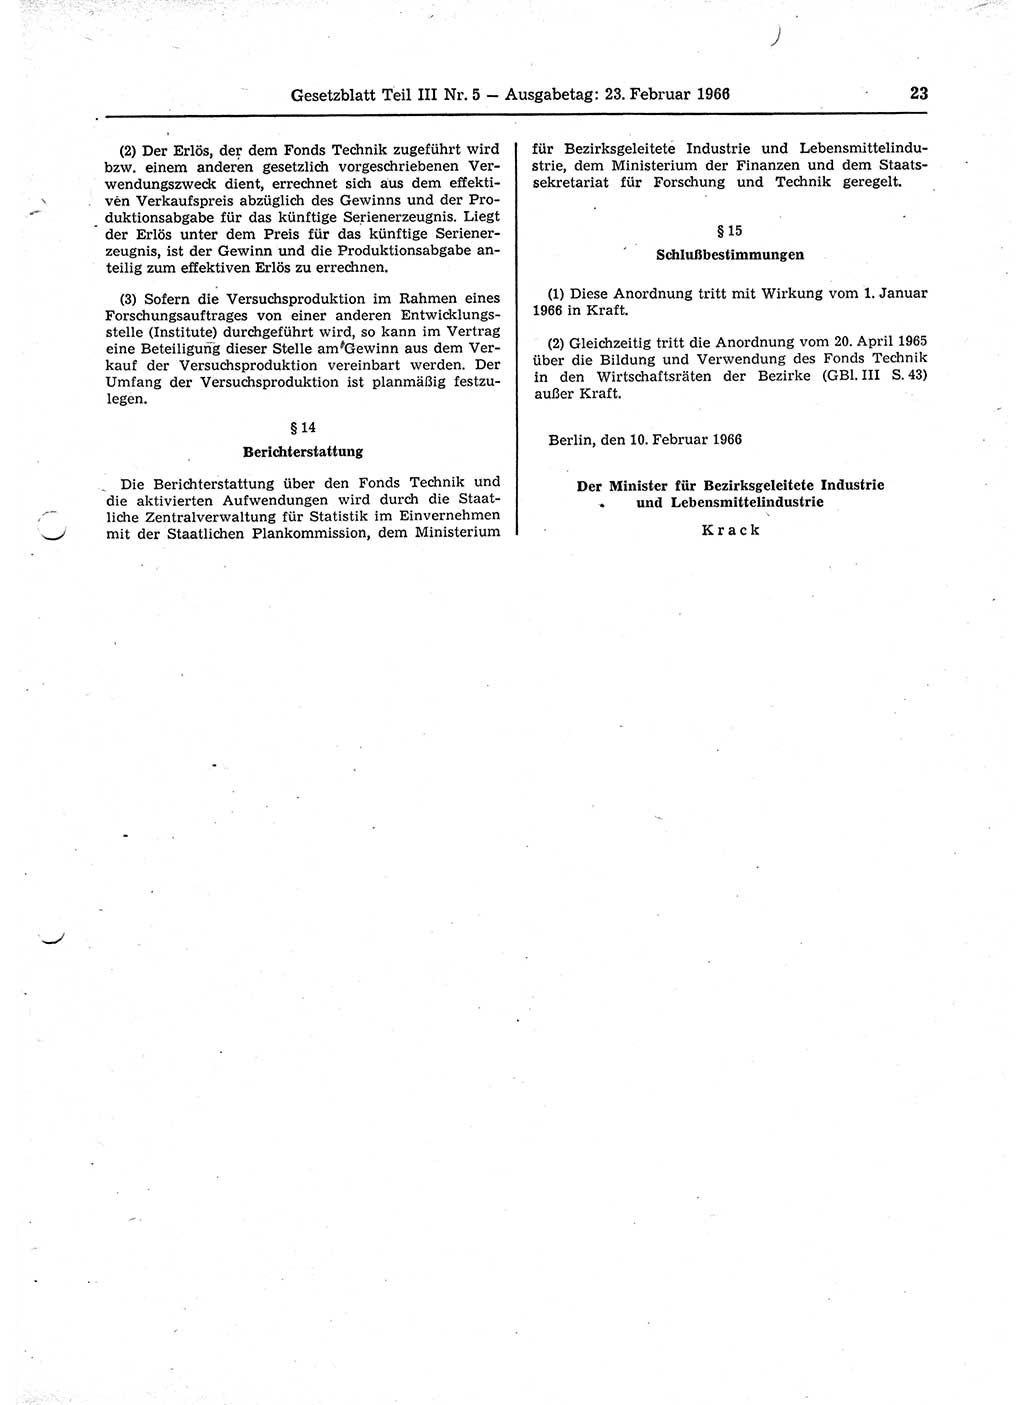 Gesetzblatt (GBl.) der Deutschen Demokratischen Republik (DDR) Teil ⅠⅠⅠ 1966, Seite 23 (GBl. DDR ⅠⅠⅠ 1966, S. 23)